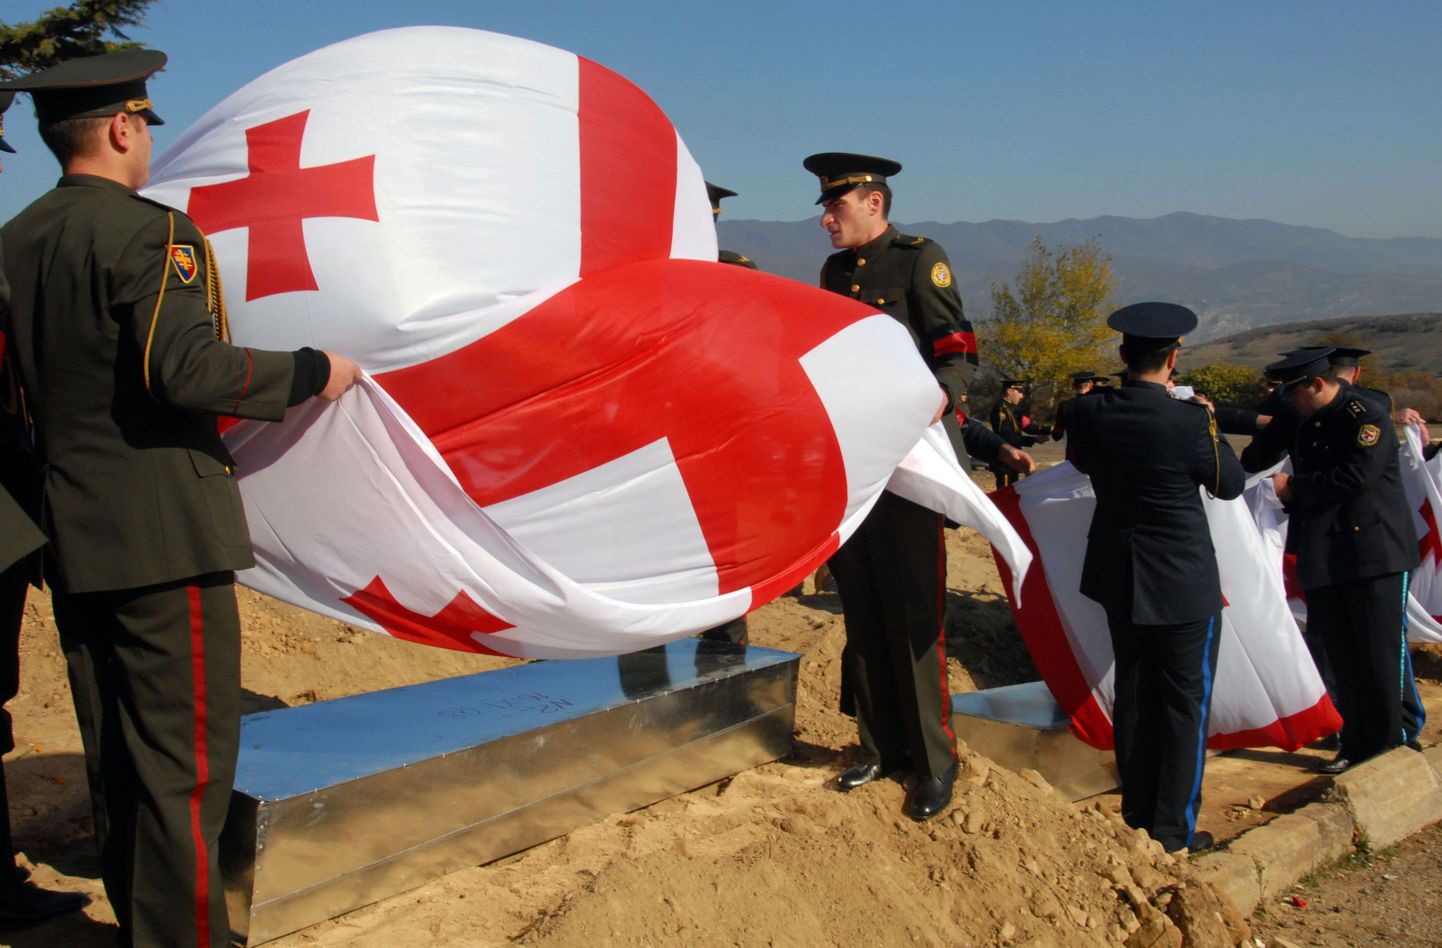 Gruusia sõdurid matmas kaaslasi, kes hukkusid augustisõja ajal Lõuna-Osseetias. Surnukehad saadi kätte diplomaatilisi kanaleid pidi korraldatud vahetuse käigus.